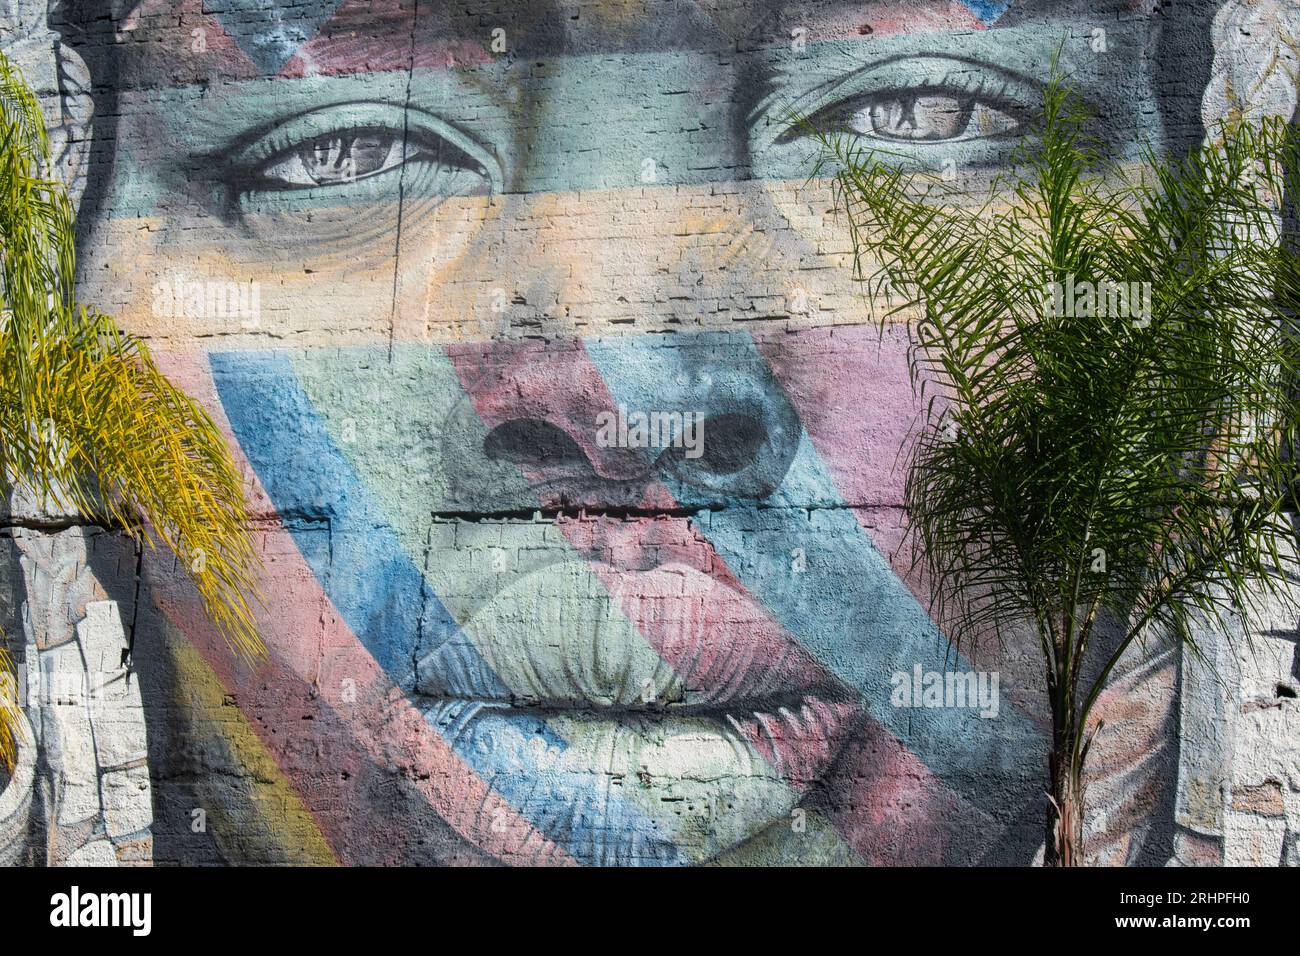 Rio de Janeiro, Brasile: Skyline della città con vista sul murale das Etnias, chiamato "siamo tutti uno", realizzato dall'artista brasiliano Eduardo Kobra per le Olimpiadi di Rio 2016 Foto Stock